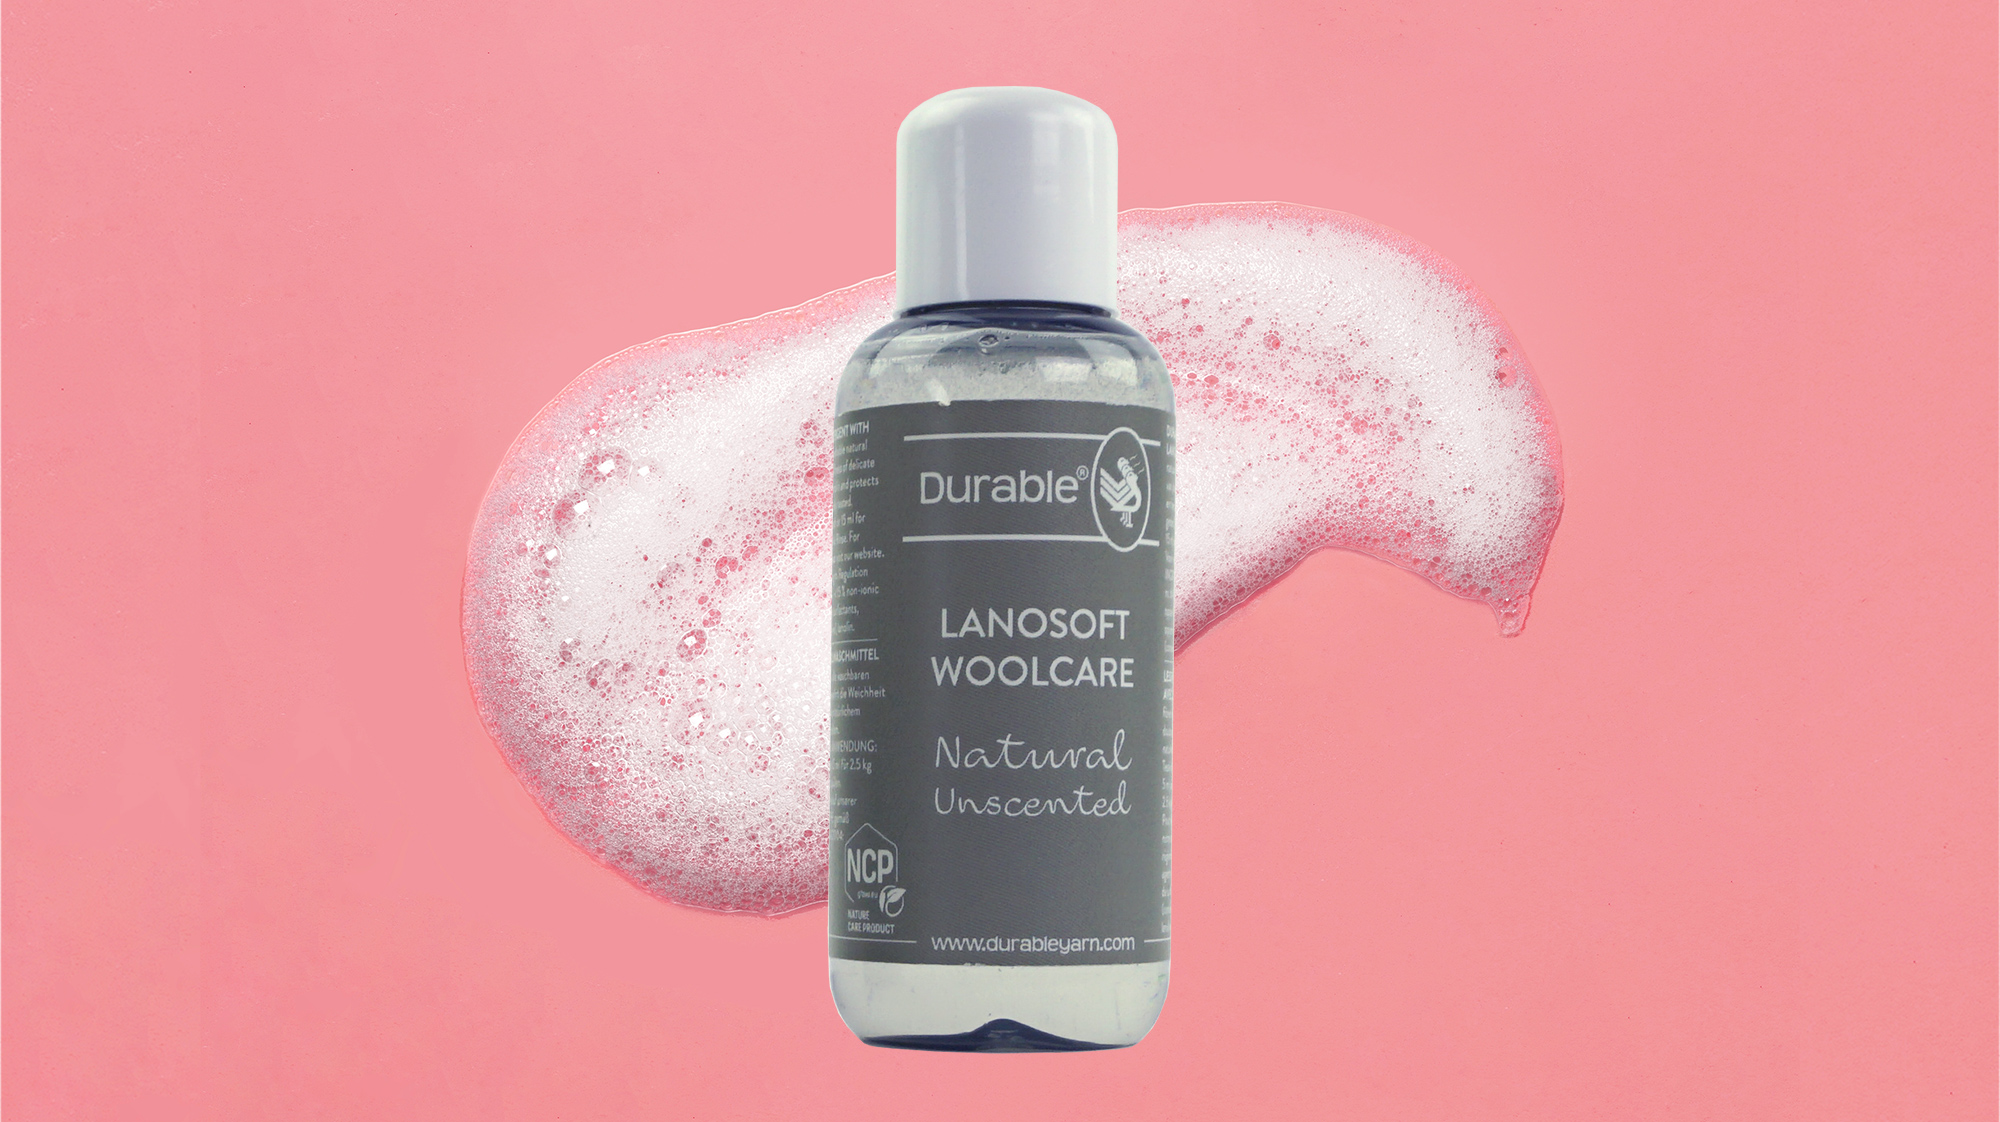 Durable Lanosoft Woolcare, een natuurlijk wolwasmiddel met lanoline.